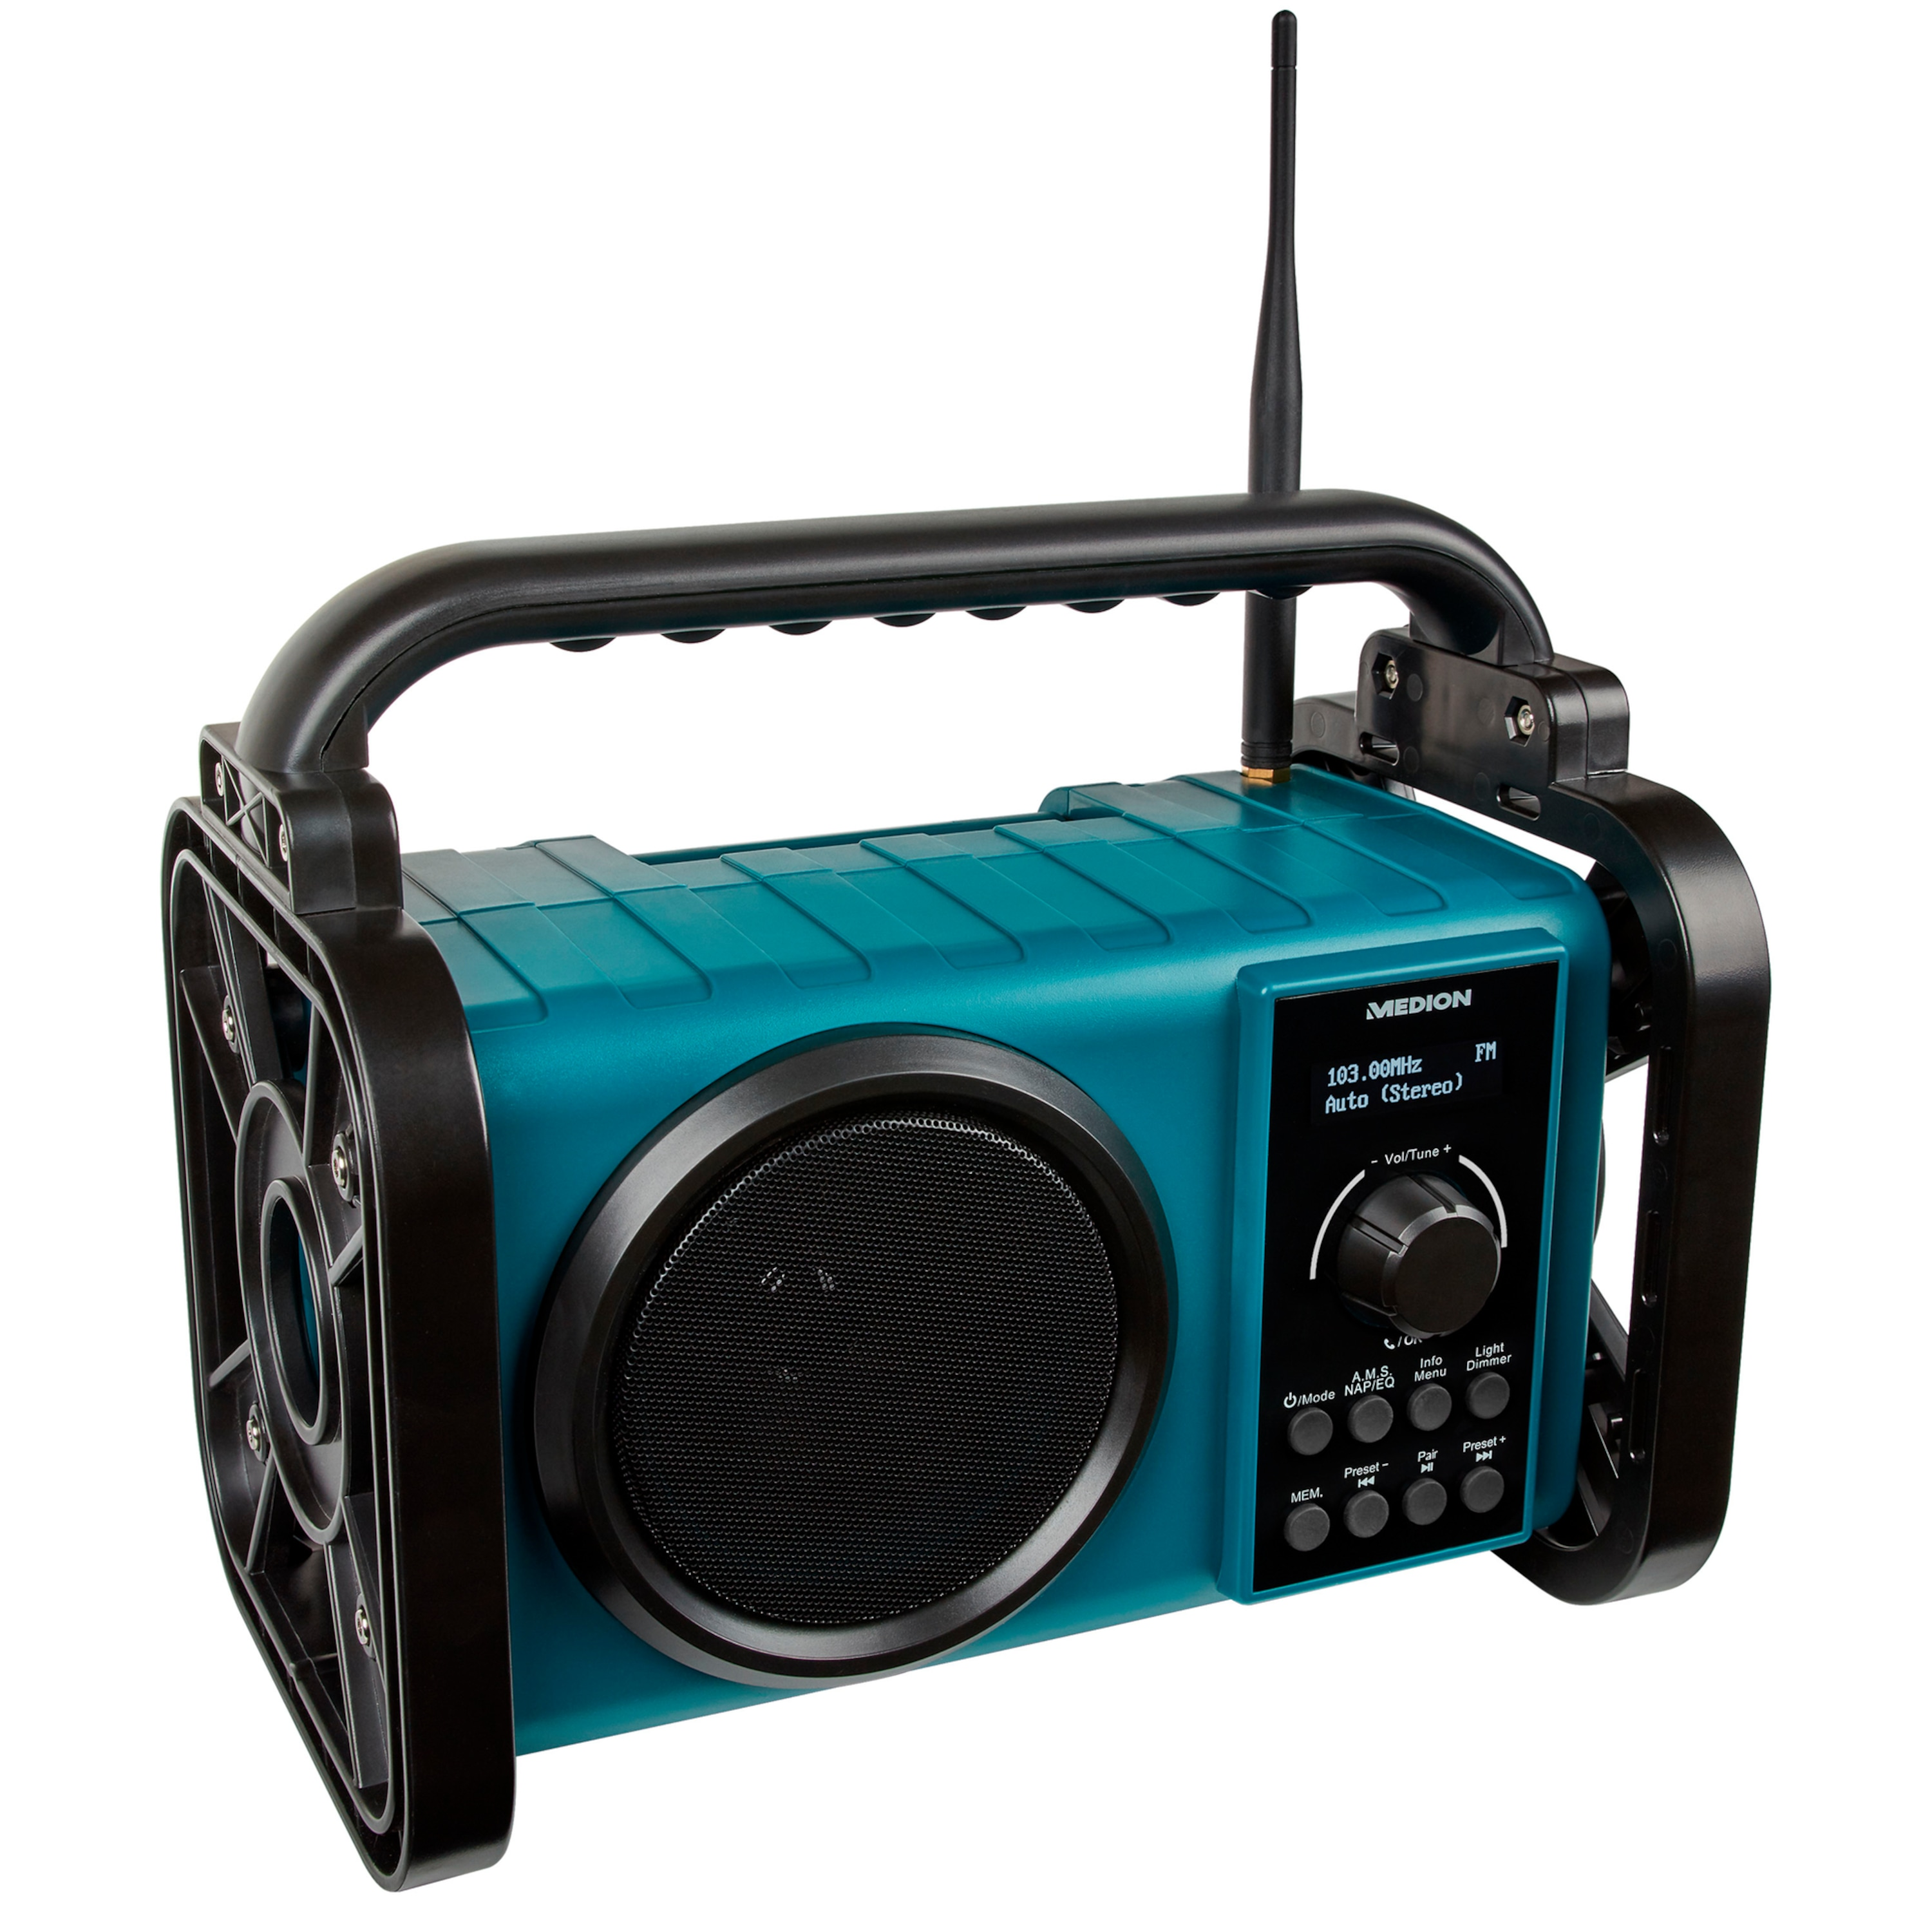 MEDION E66877 blau KW, Baustellenradio